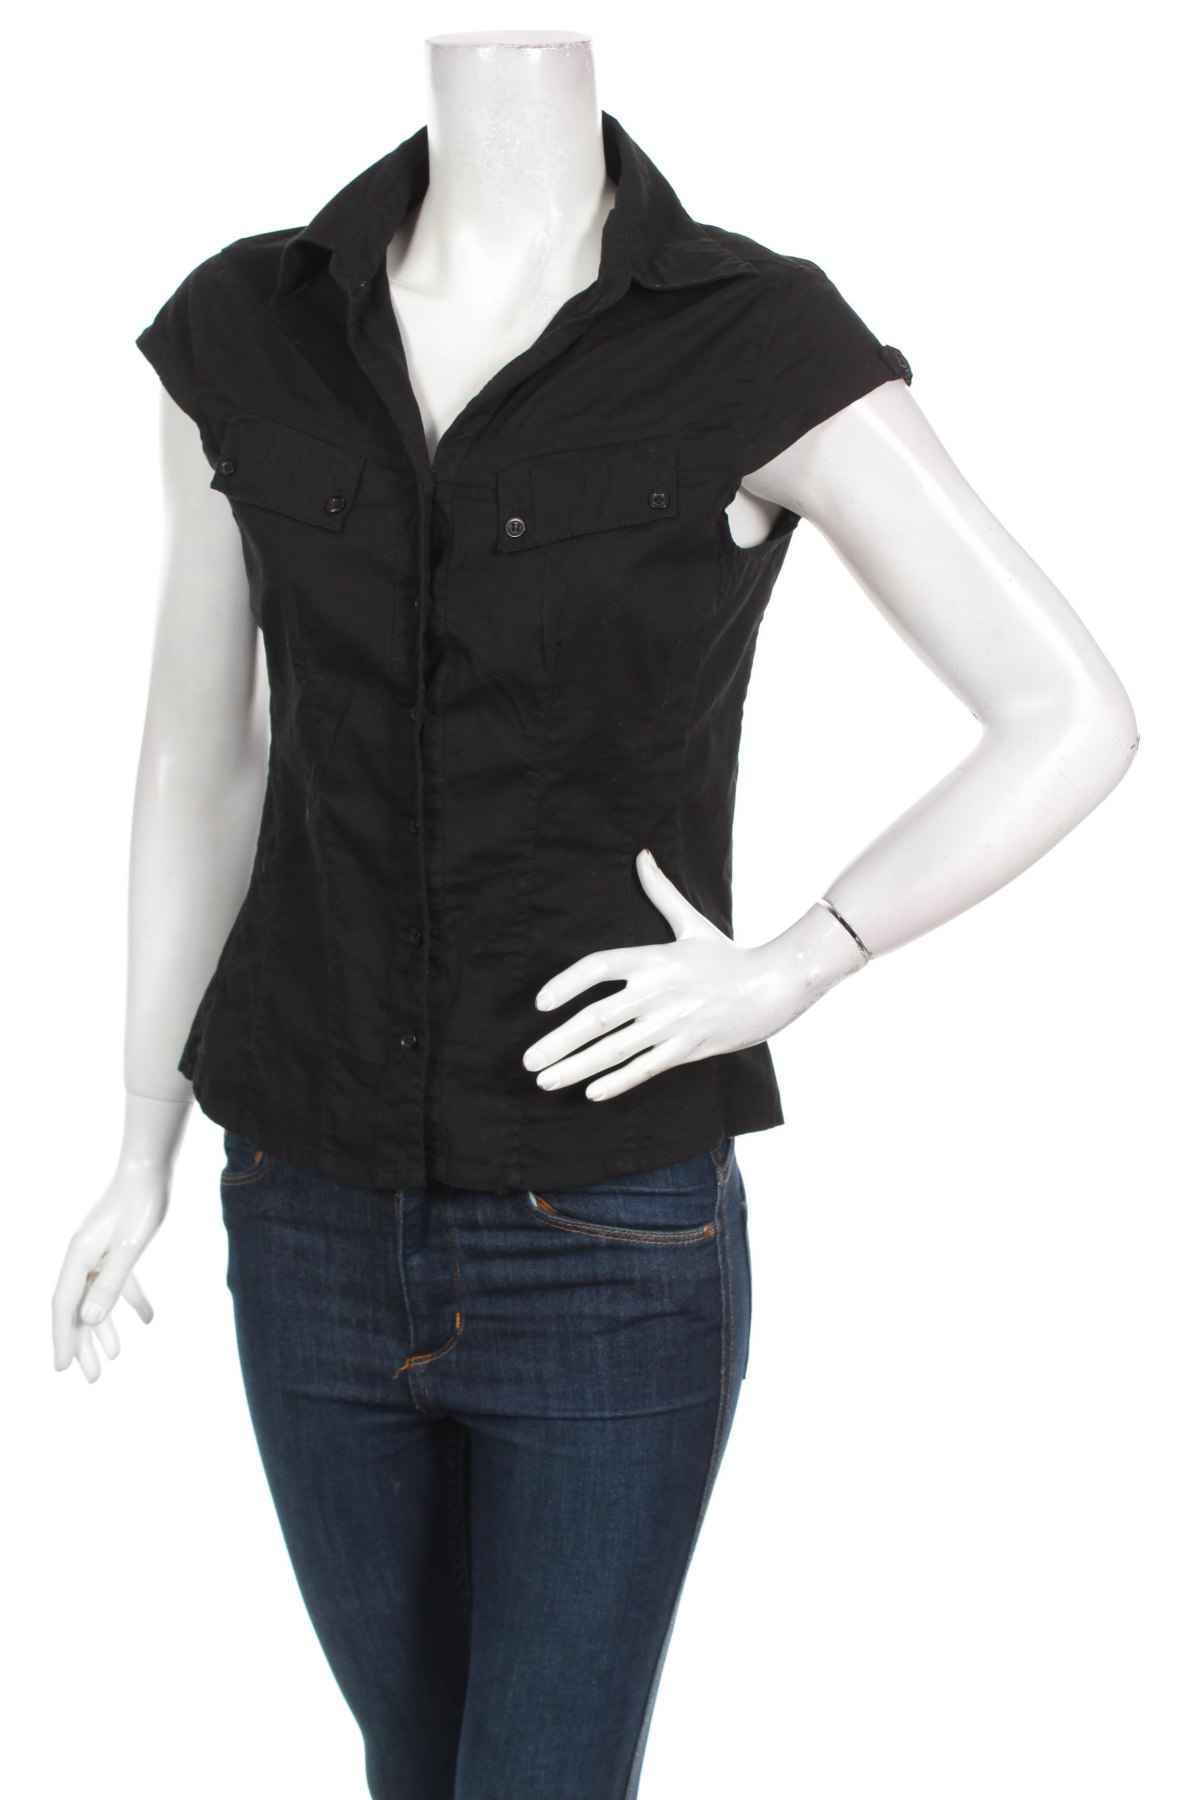 Γυναικείο πουκάμισο X-Mail, Μέγεθος M, Χρώμα Μαύρο, Τιμή 9,90 €